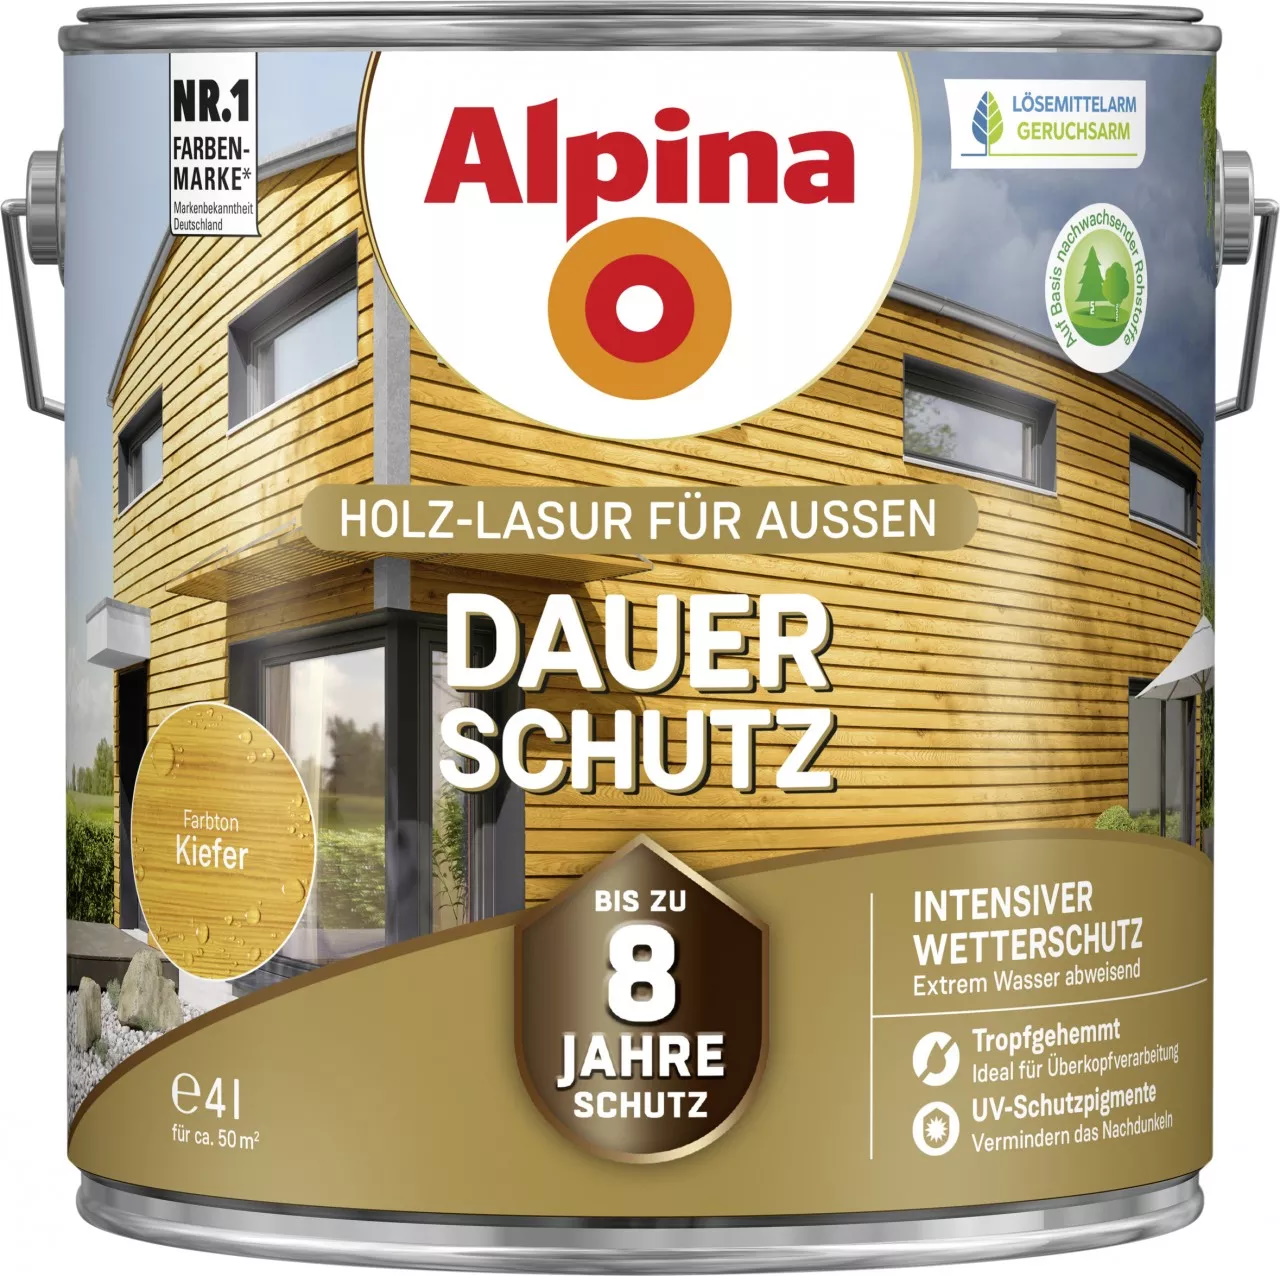 Alpina Dauer-Schutz Holz-Lasur für Außen Kiefer 4 Liter